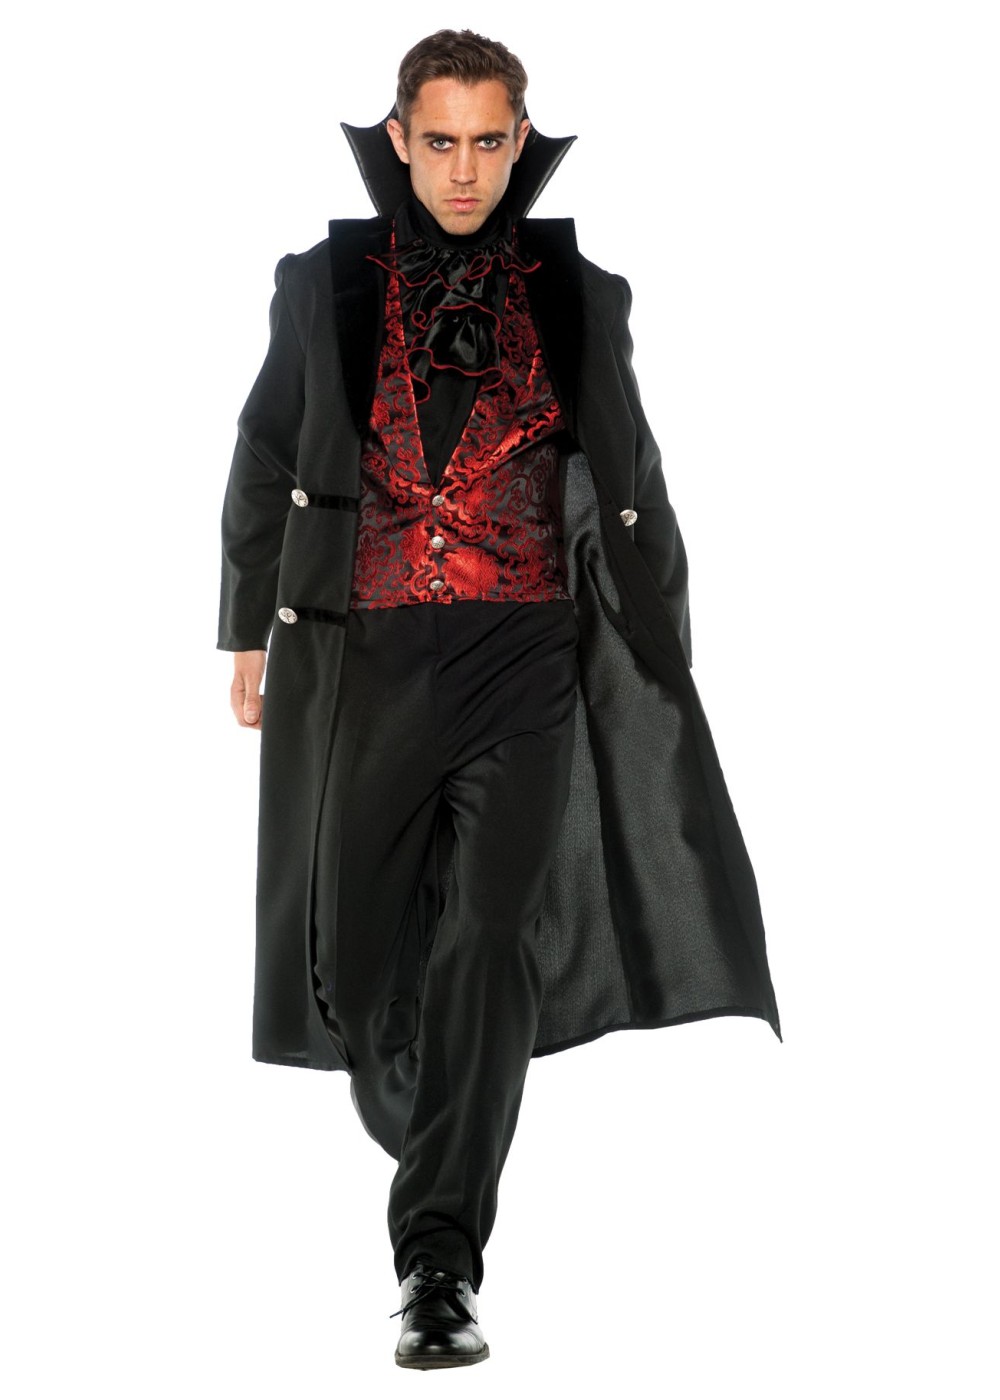 Mens Gothic Vampire Costume